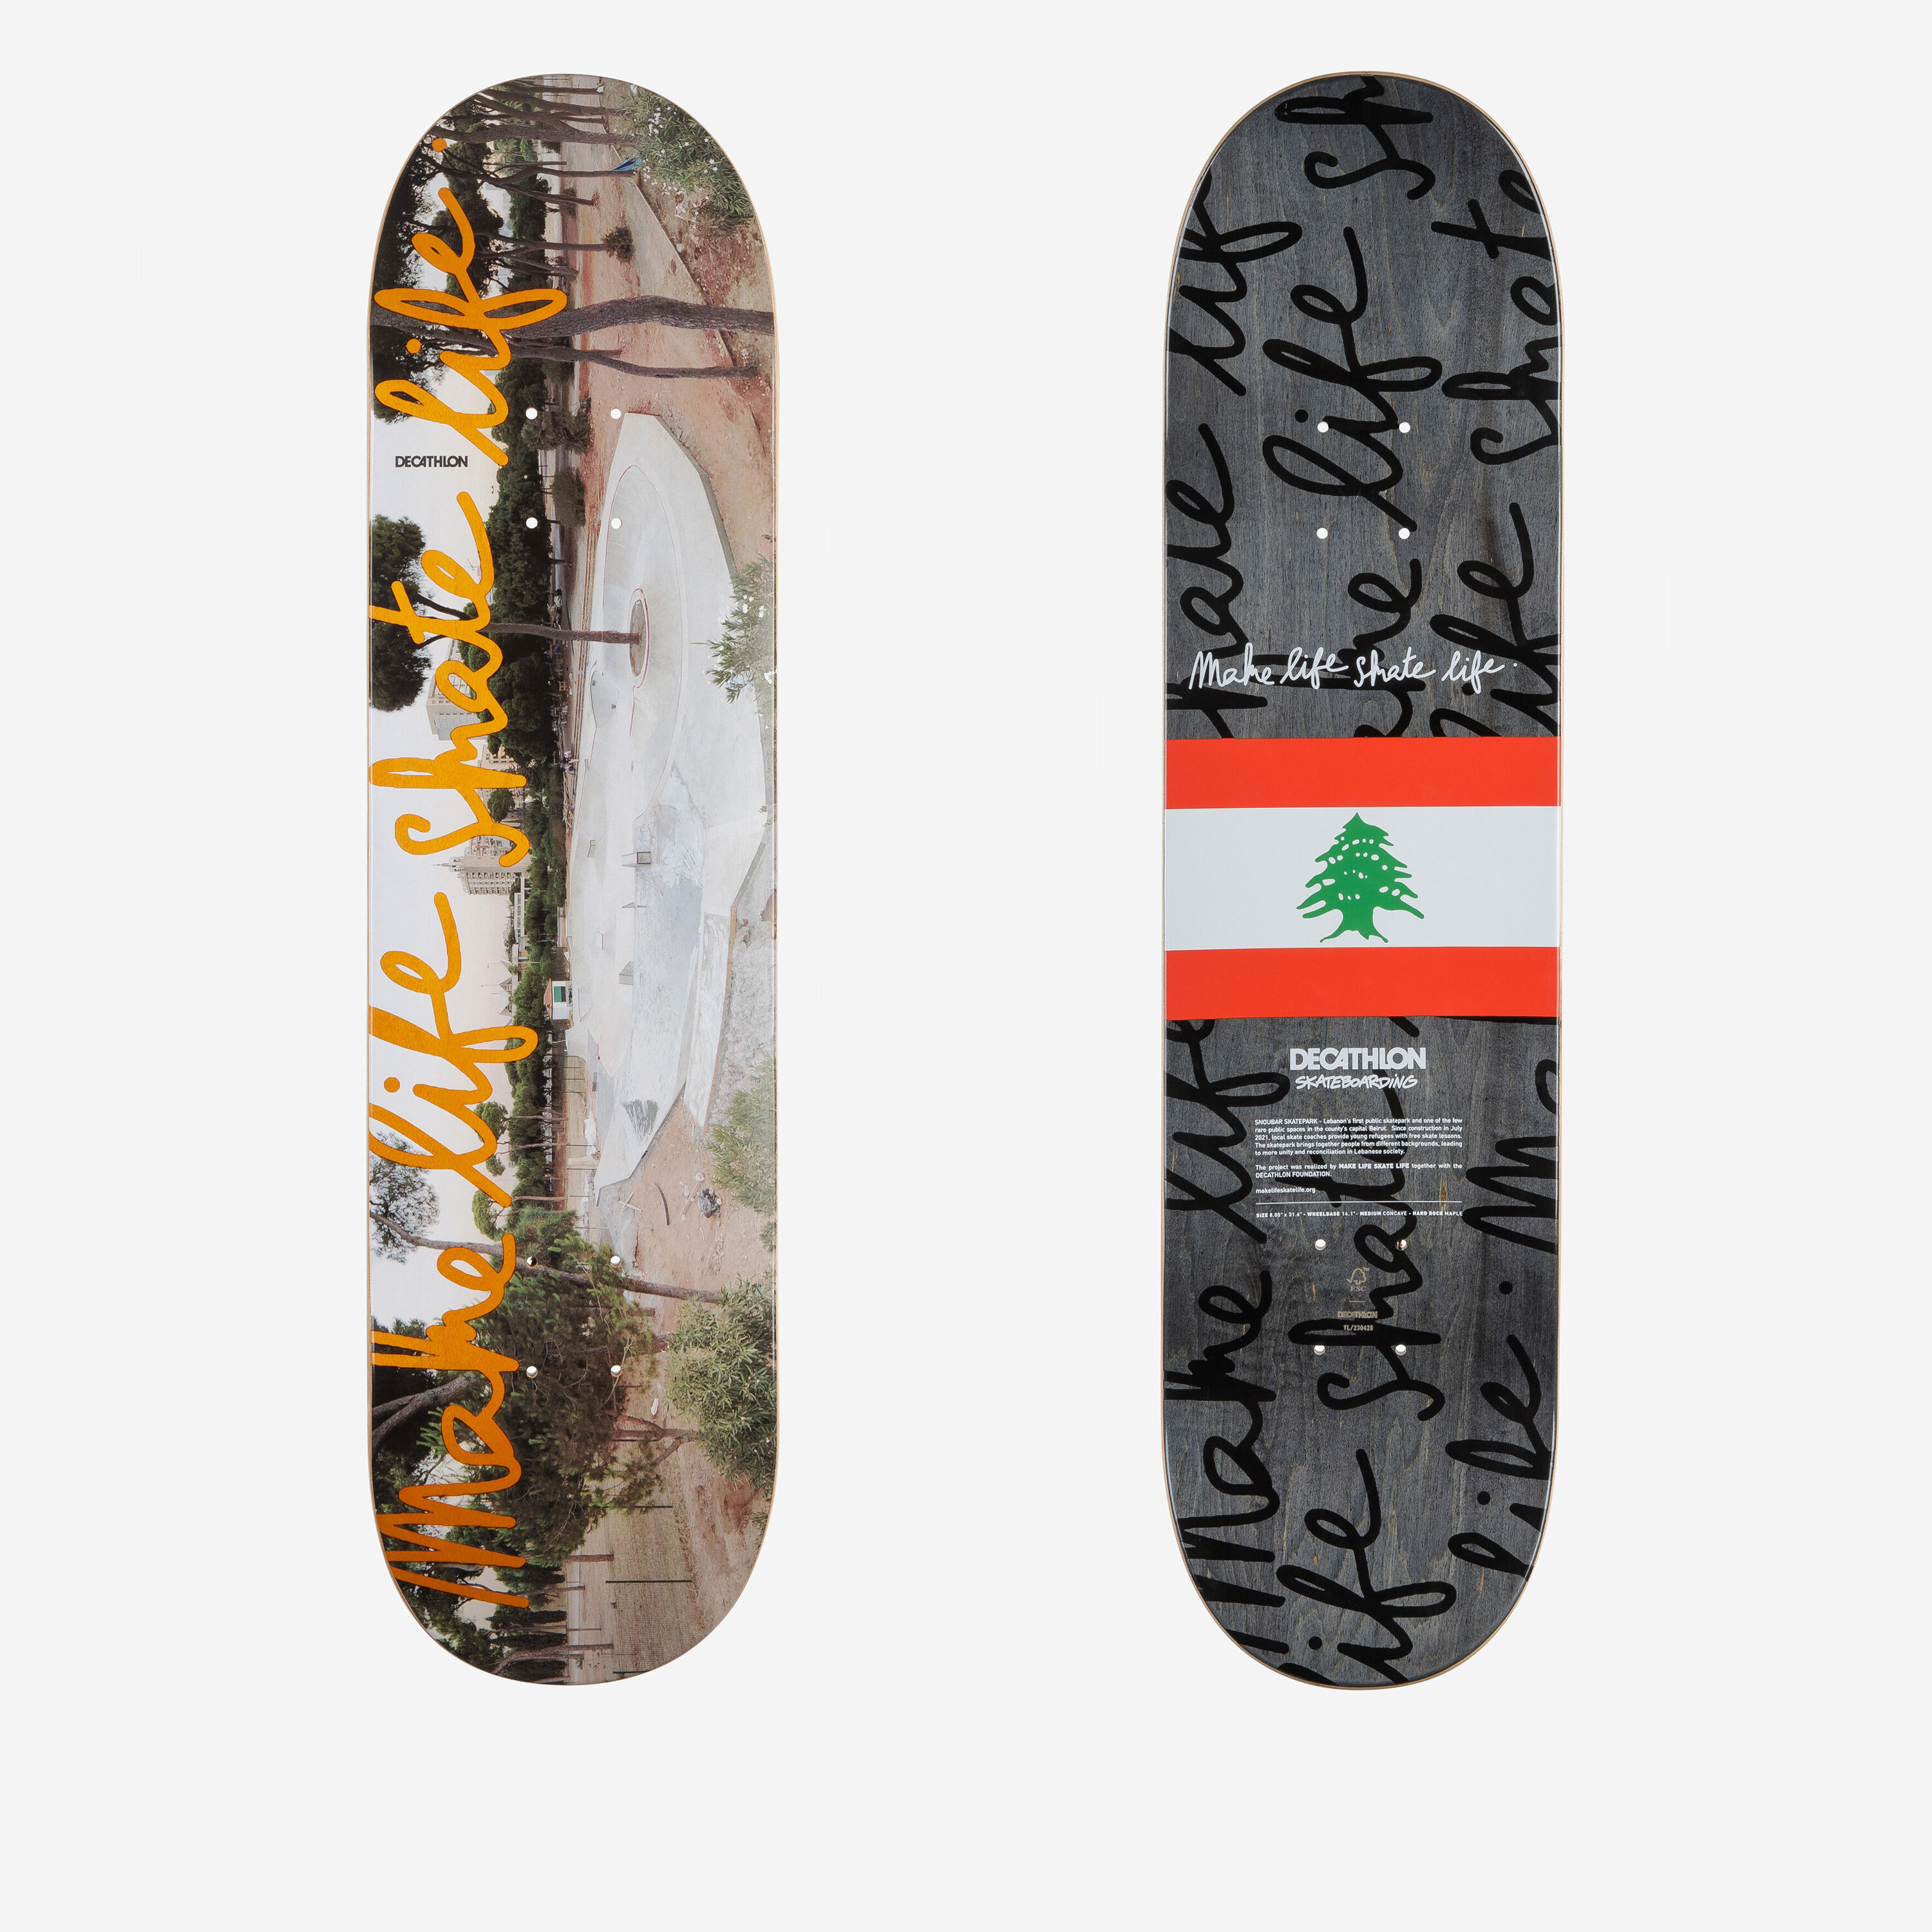 DECATHLON 8" Maple Skateboard Deck DK500 Popsicle Make Life Skate Life Lebanon